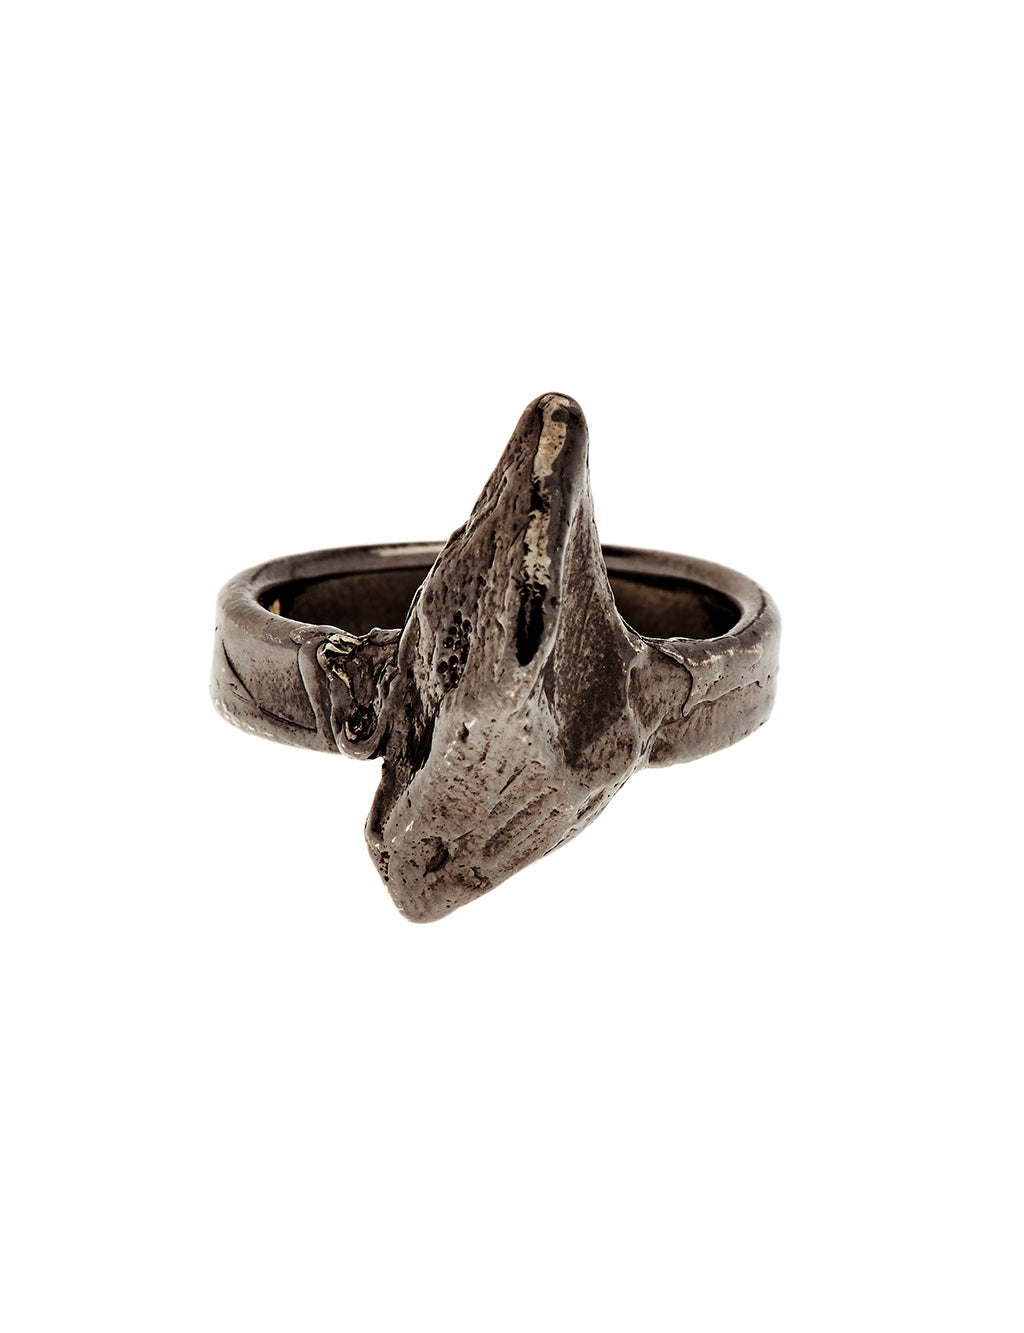 Black Rhodium textured ring